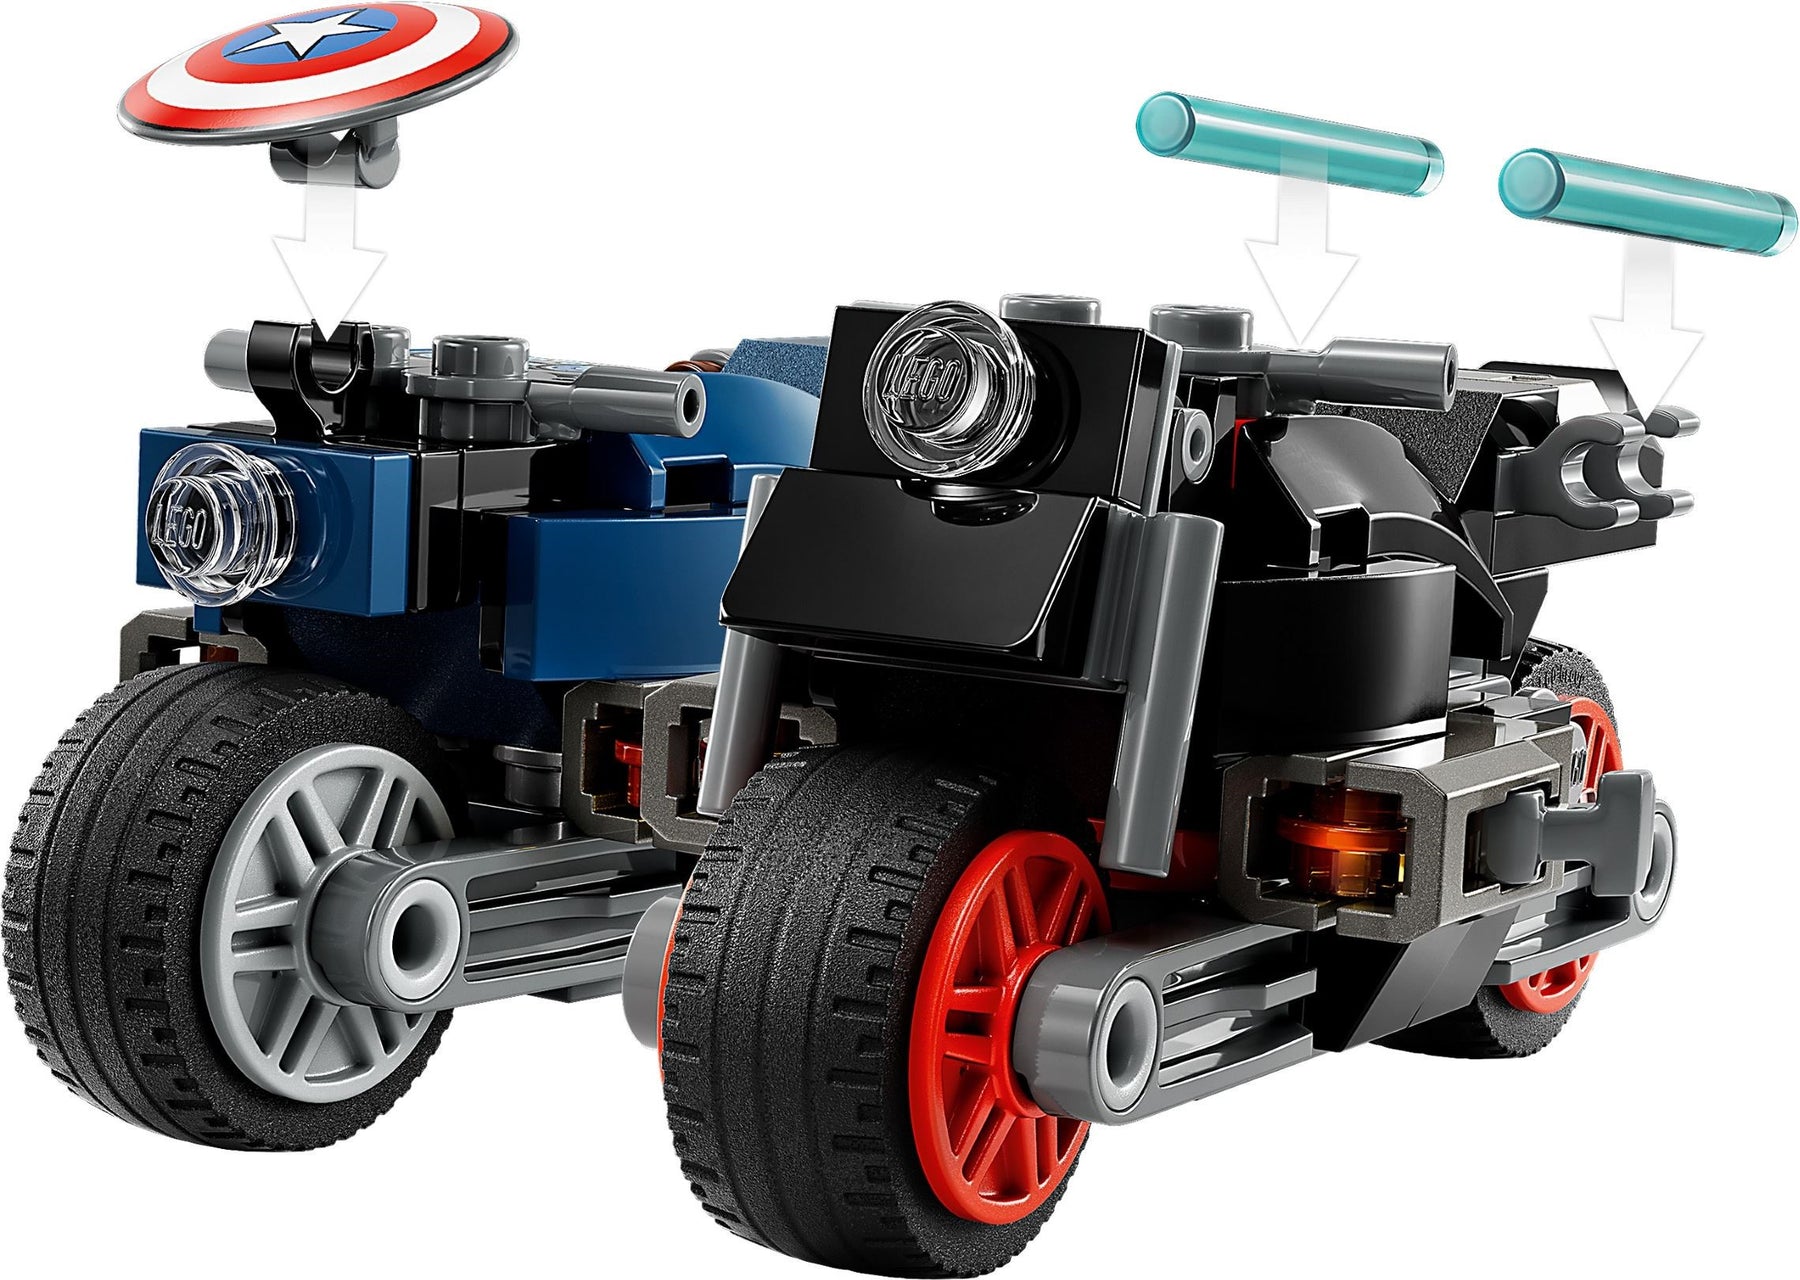 LEGO Marvel Studios 76260 Black Widow ja Captain America Moottoripyörineen